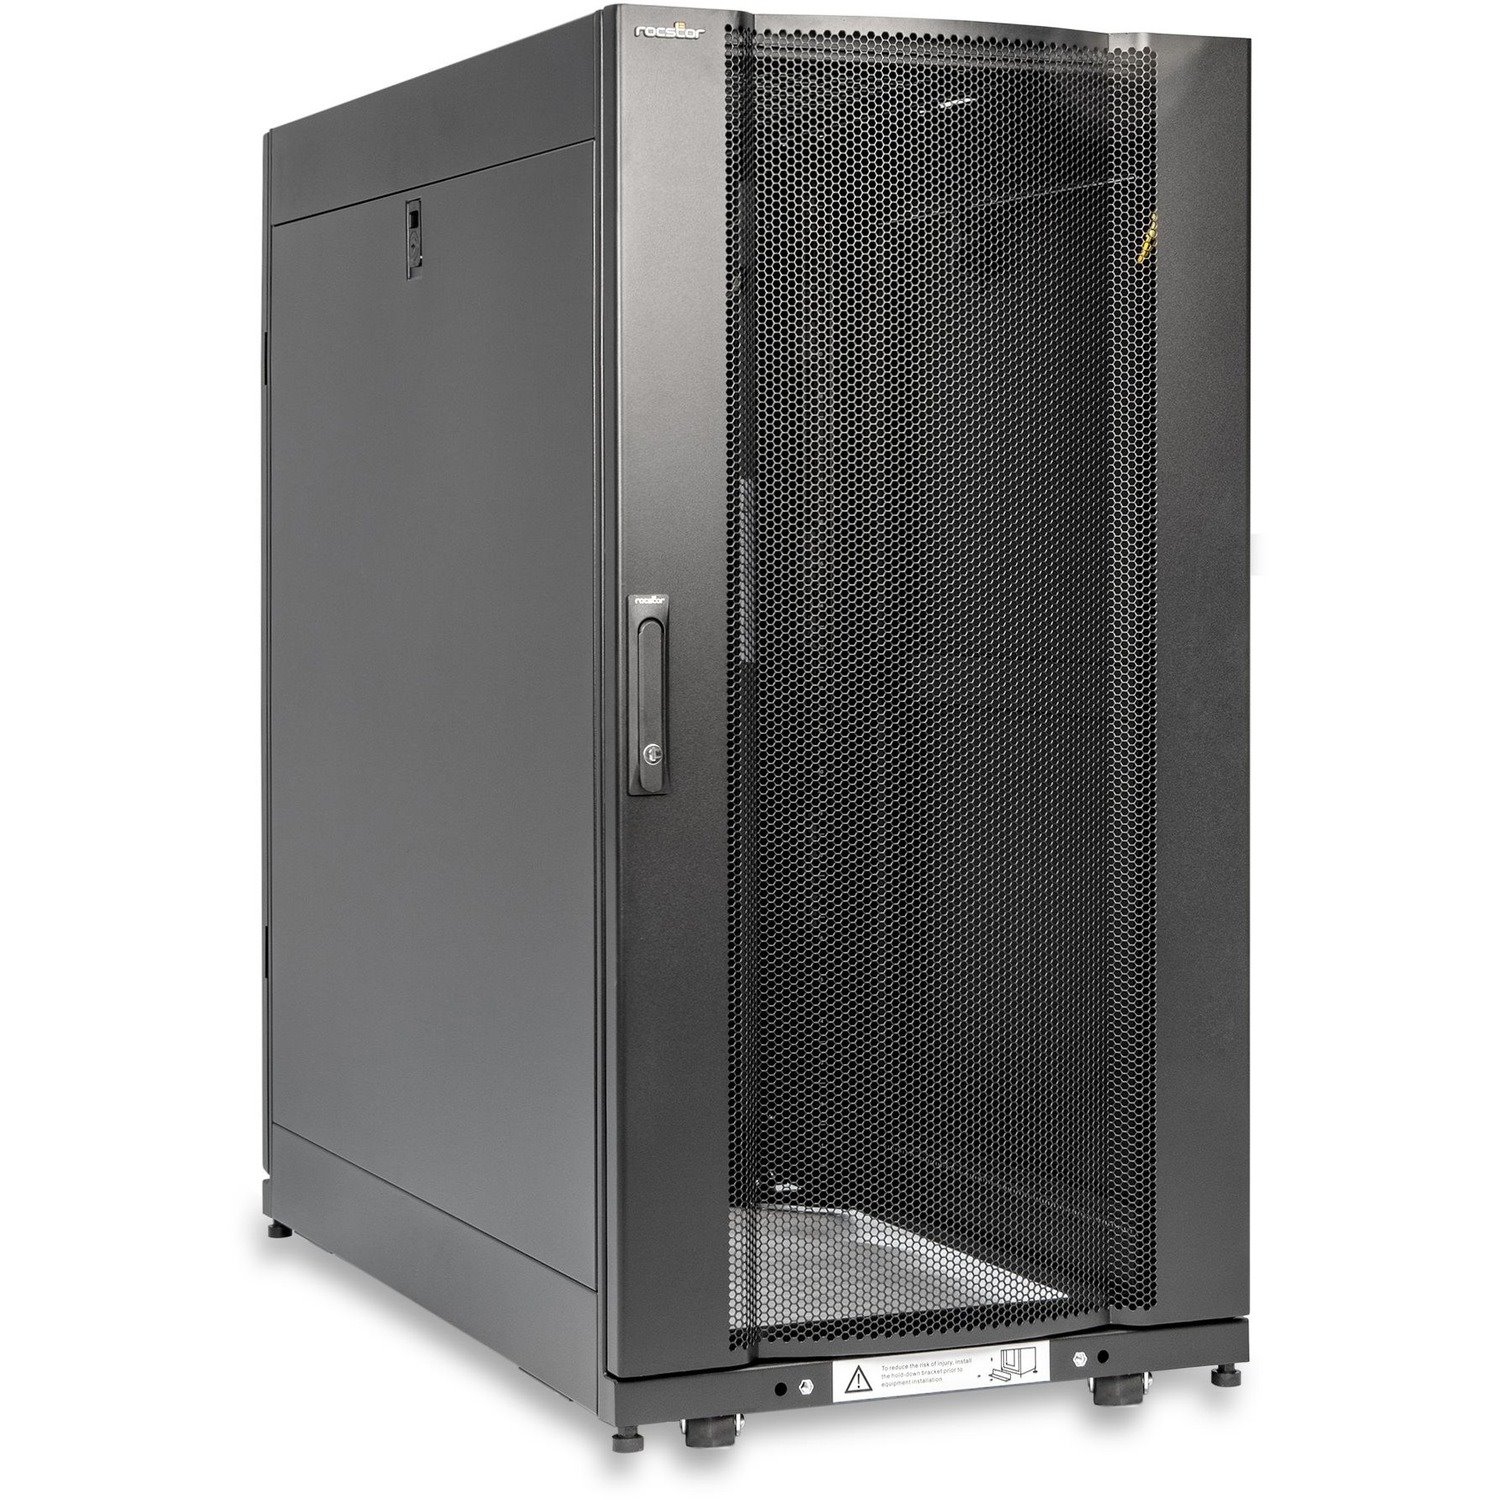 Rocstor SolidRack R3104 Server Rack Cabinet - 19 in. Deep Enclosure - 24U